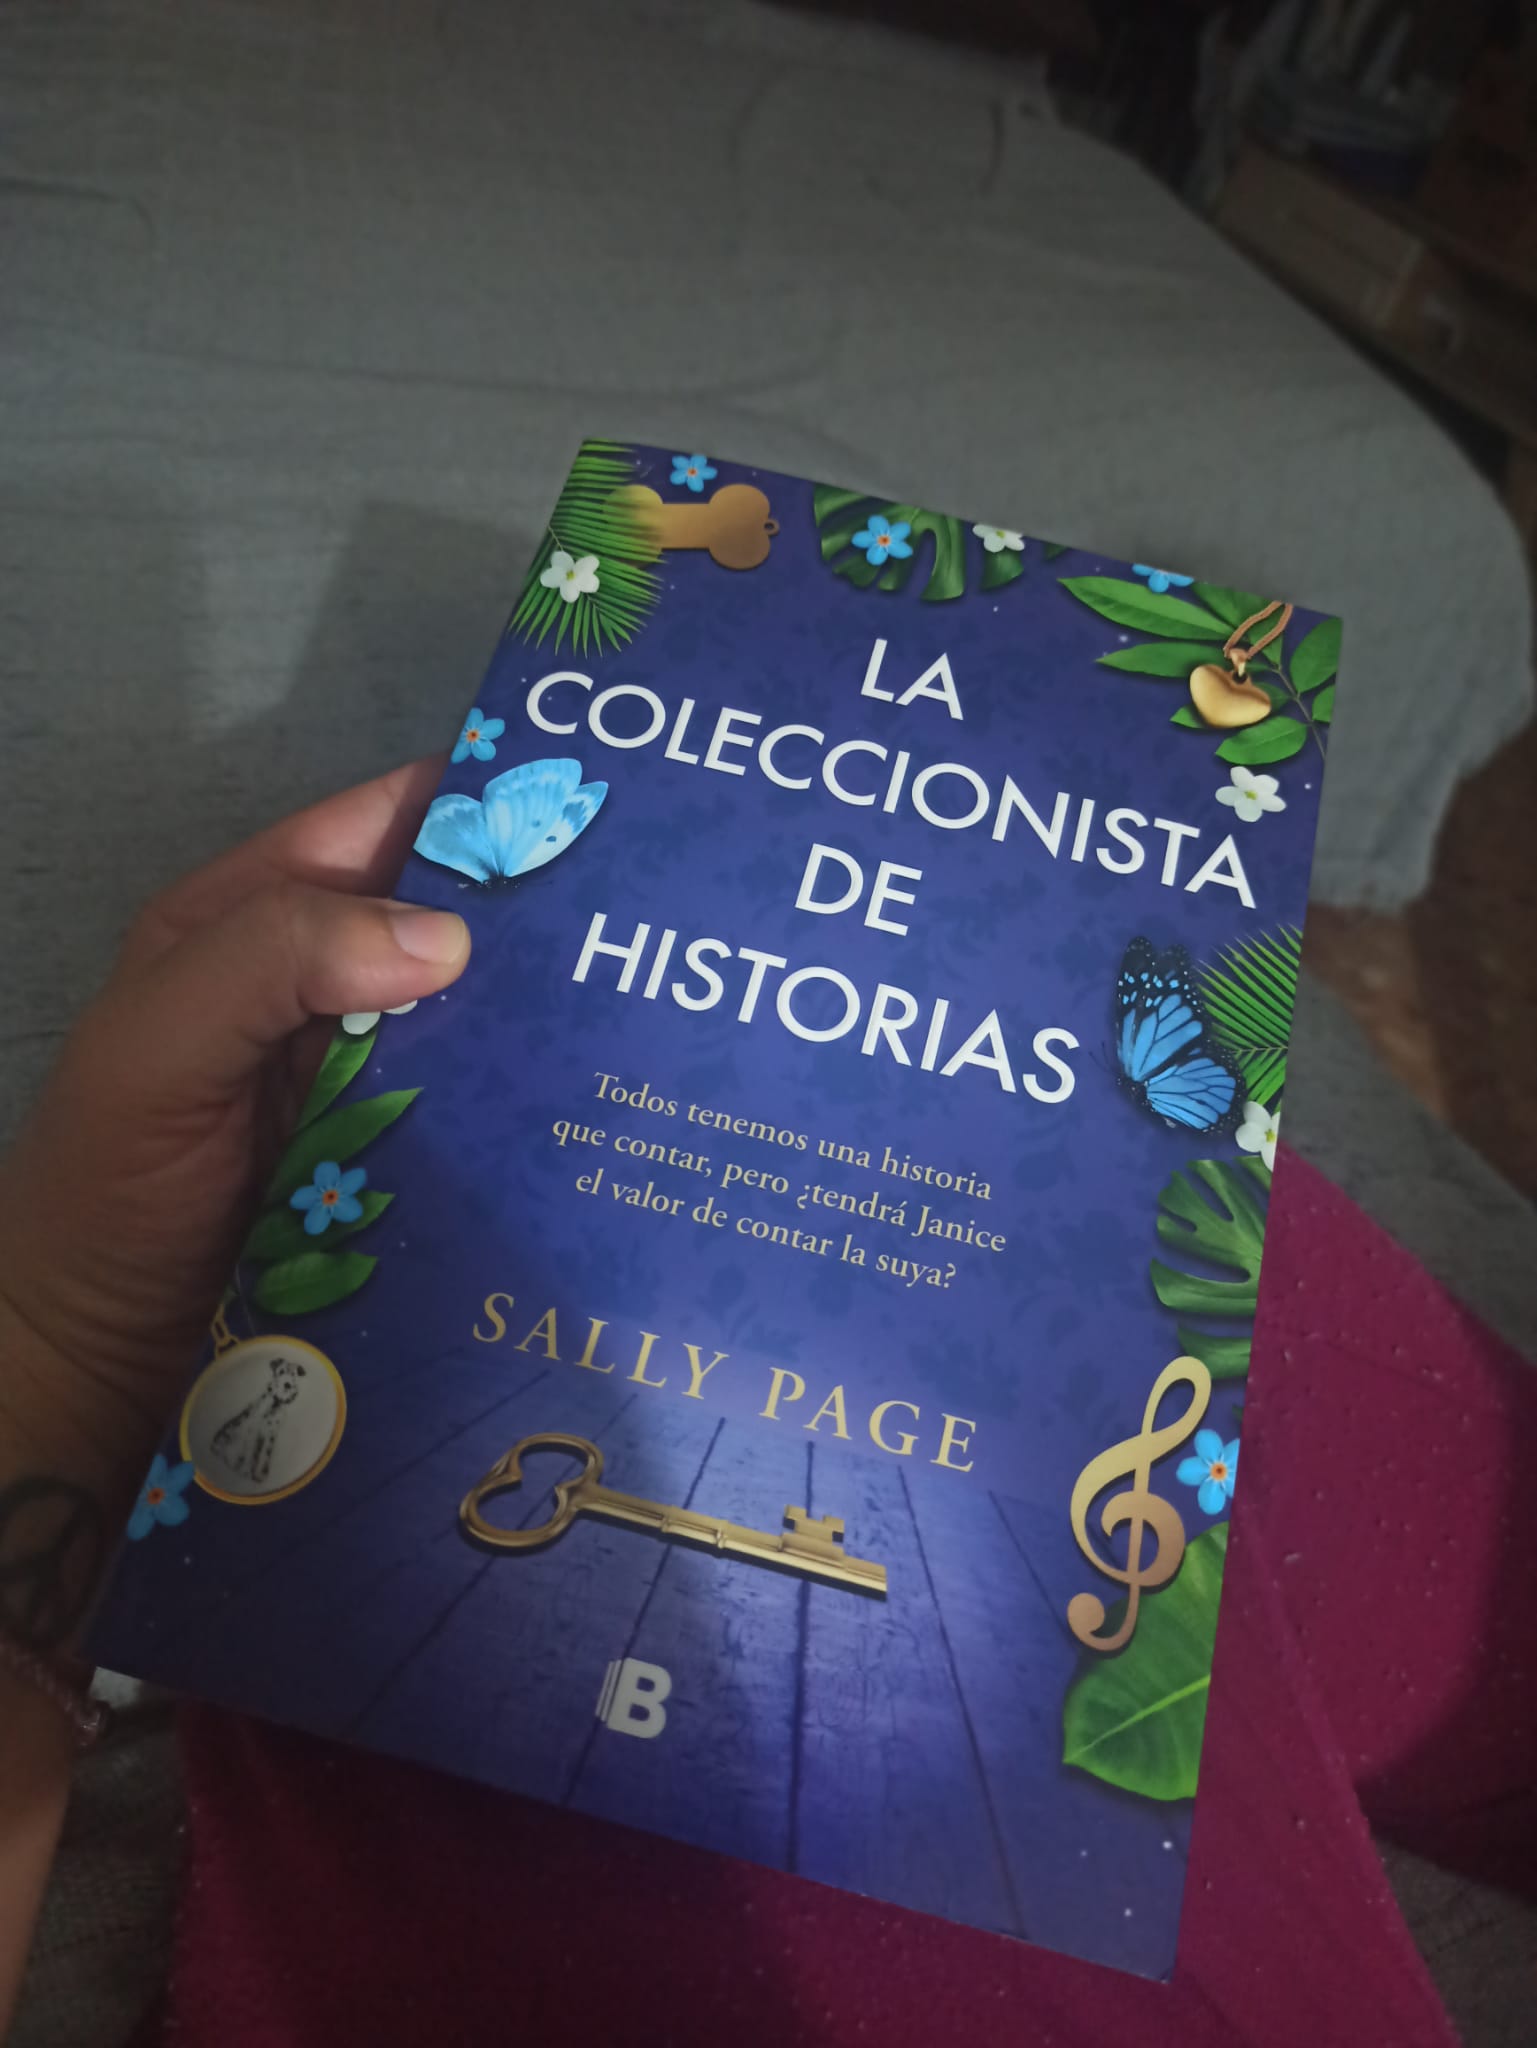 LA COLECCIONISTA DE HISTORIAS, de Sally Page.